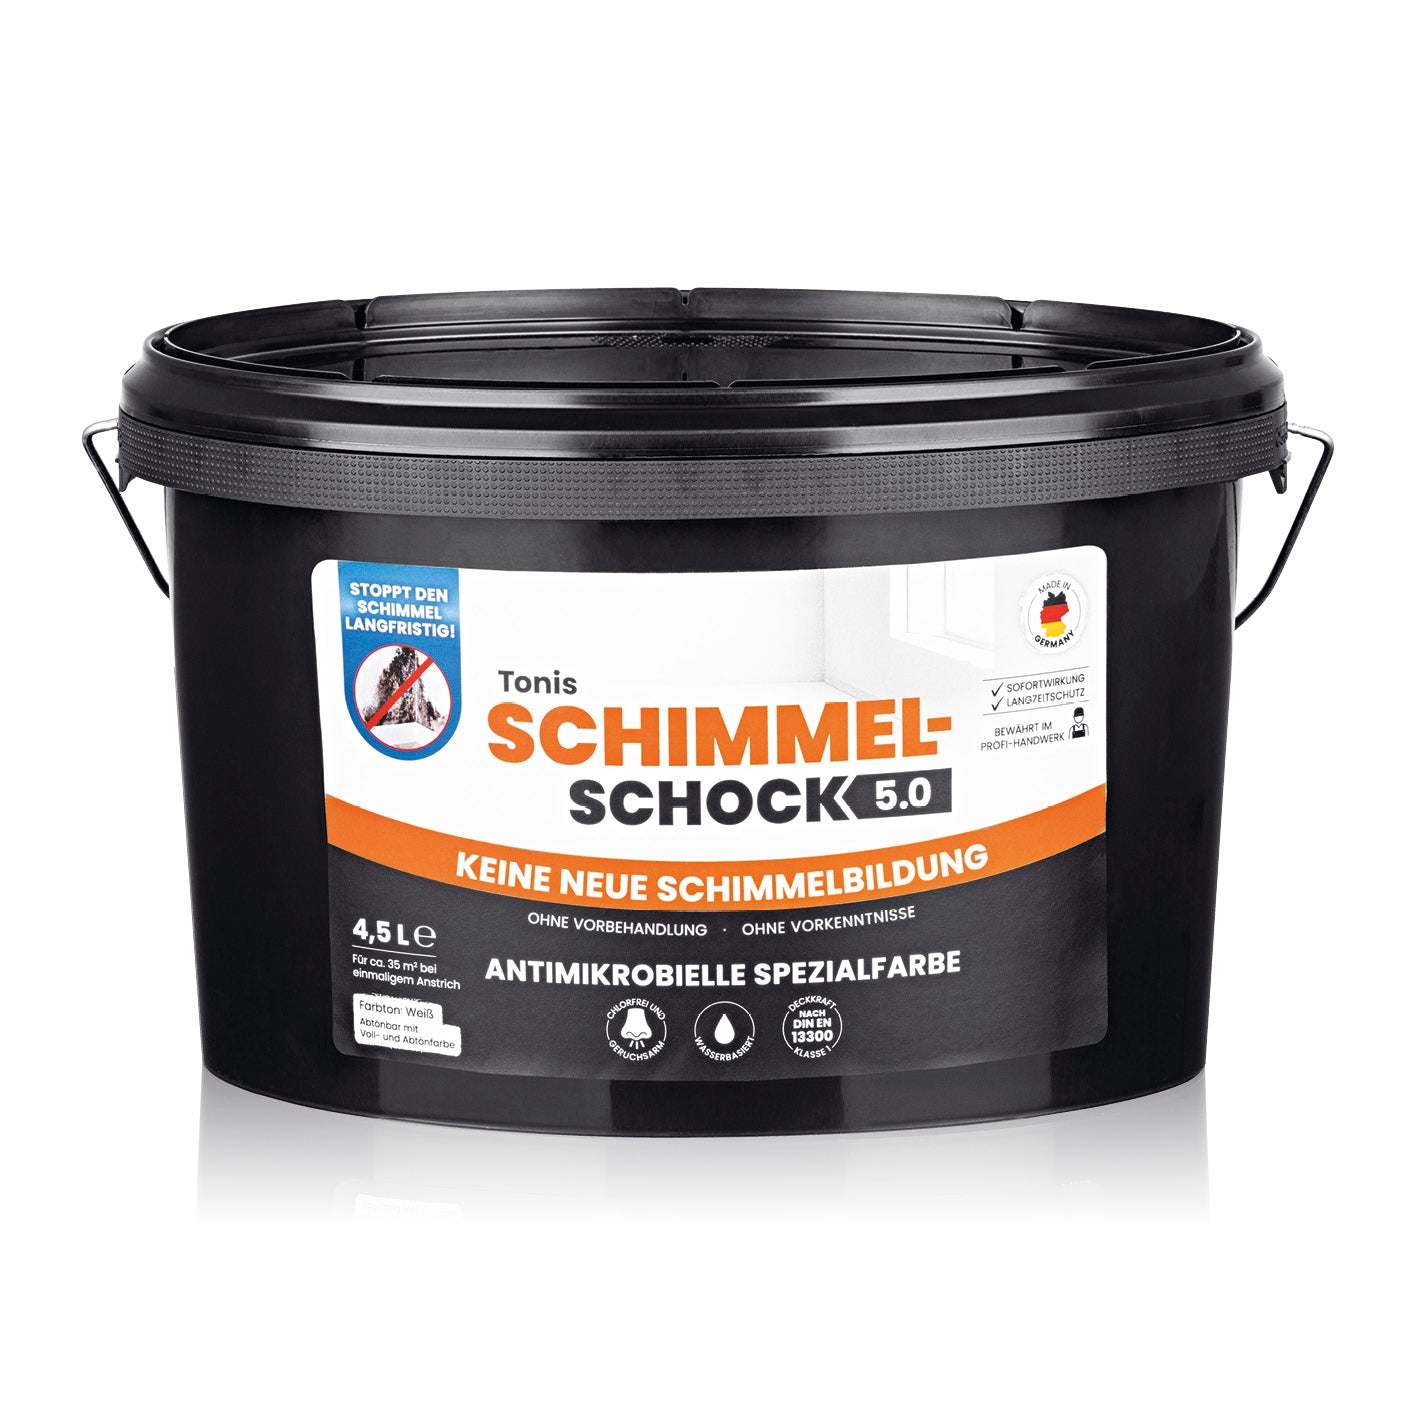 Tonis SCHIMMELSCHOCK 5.0 - Antimikrobielle Spezialfarbe - Farbeimer 4,5l Gebinde - weiß